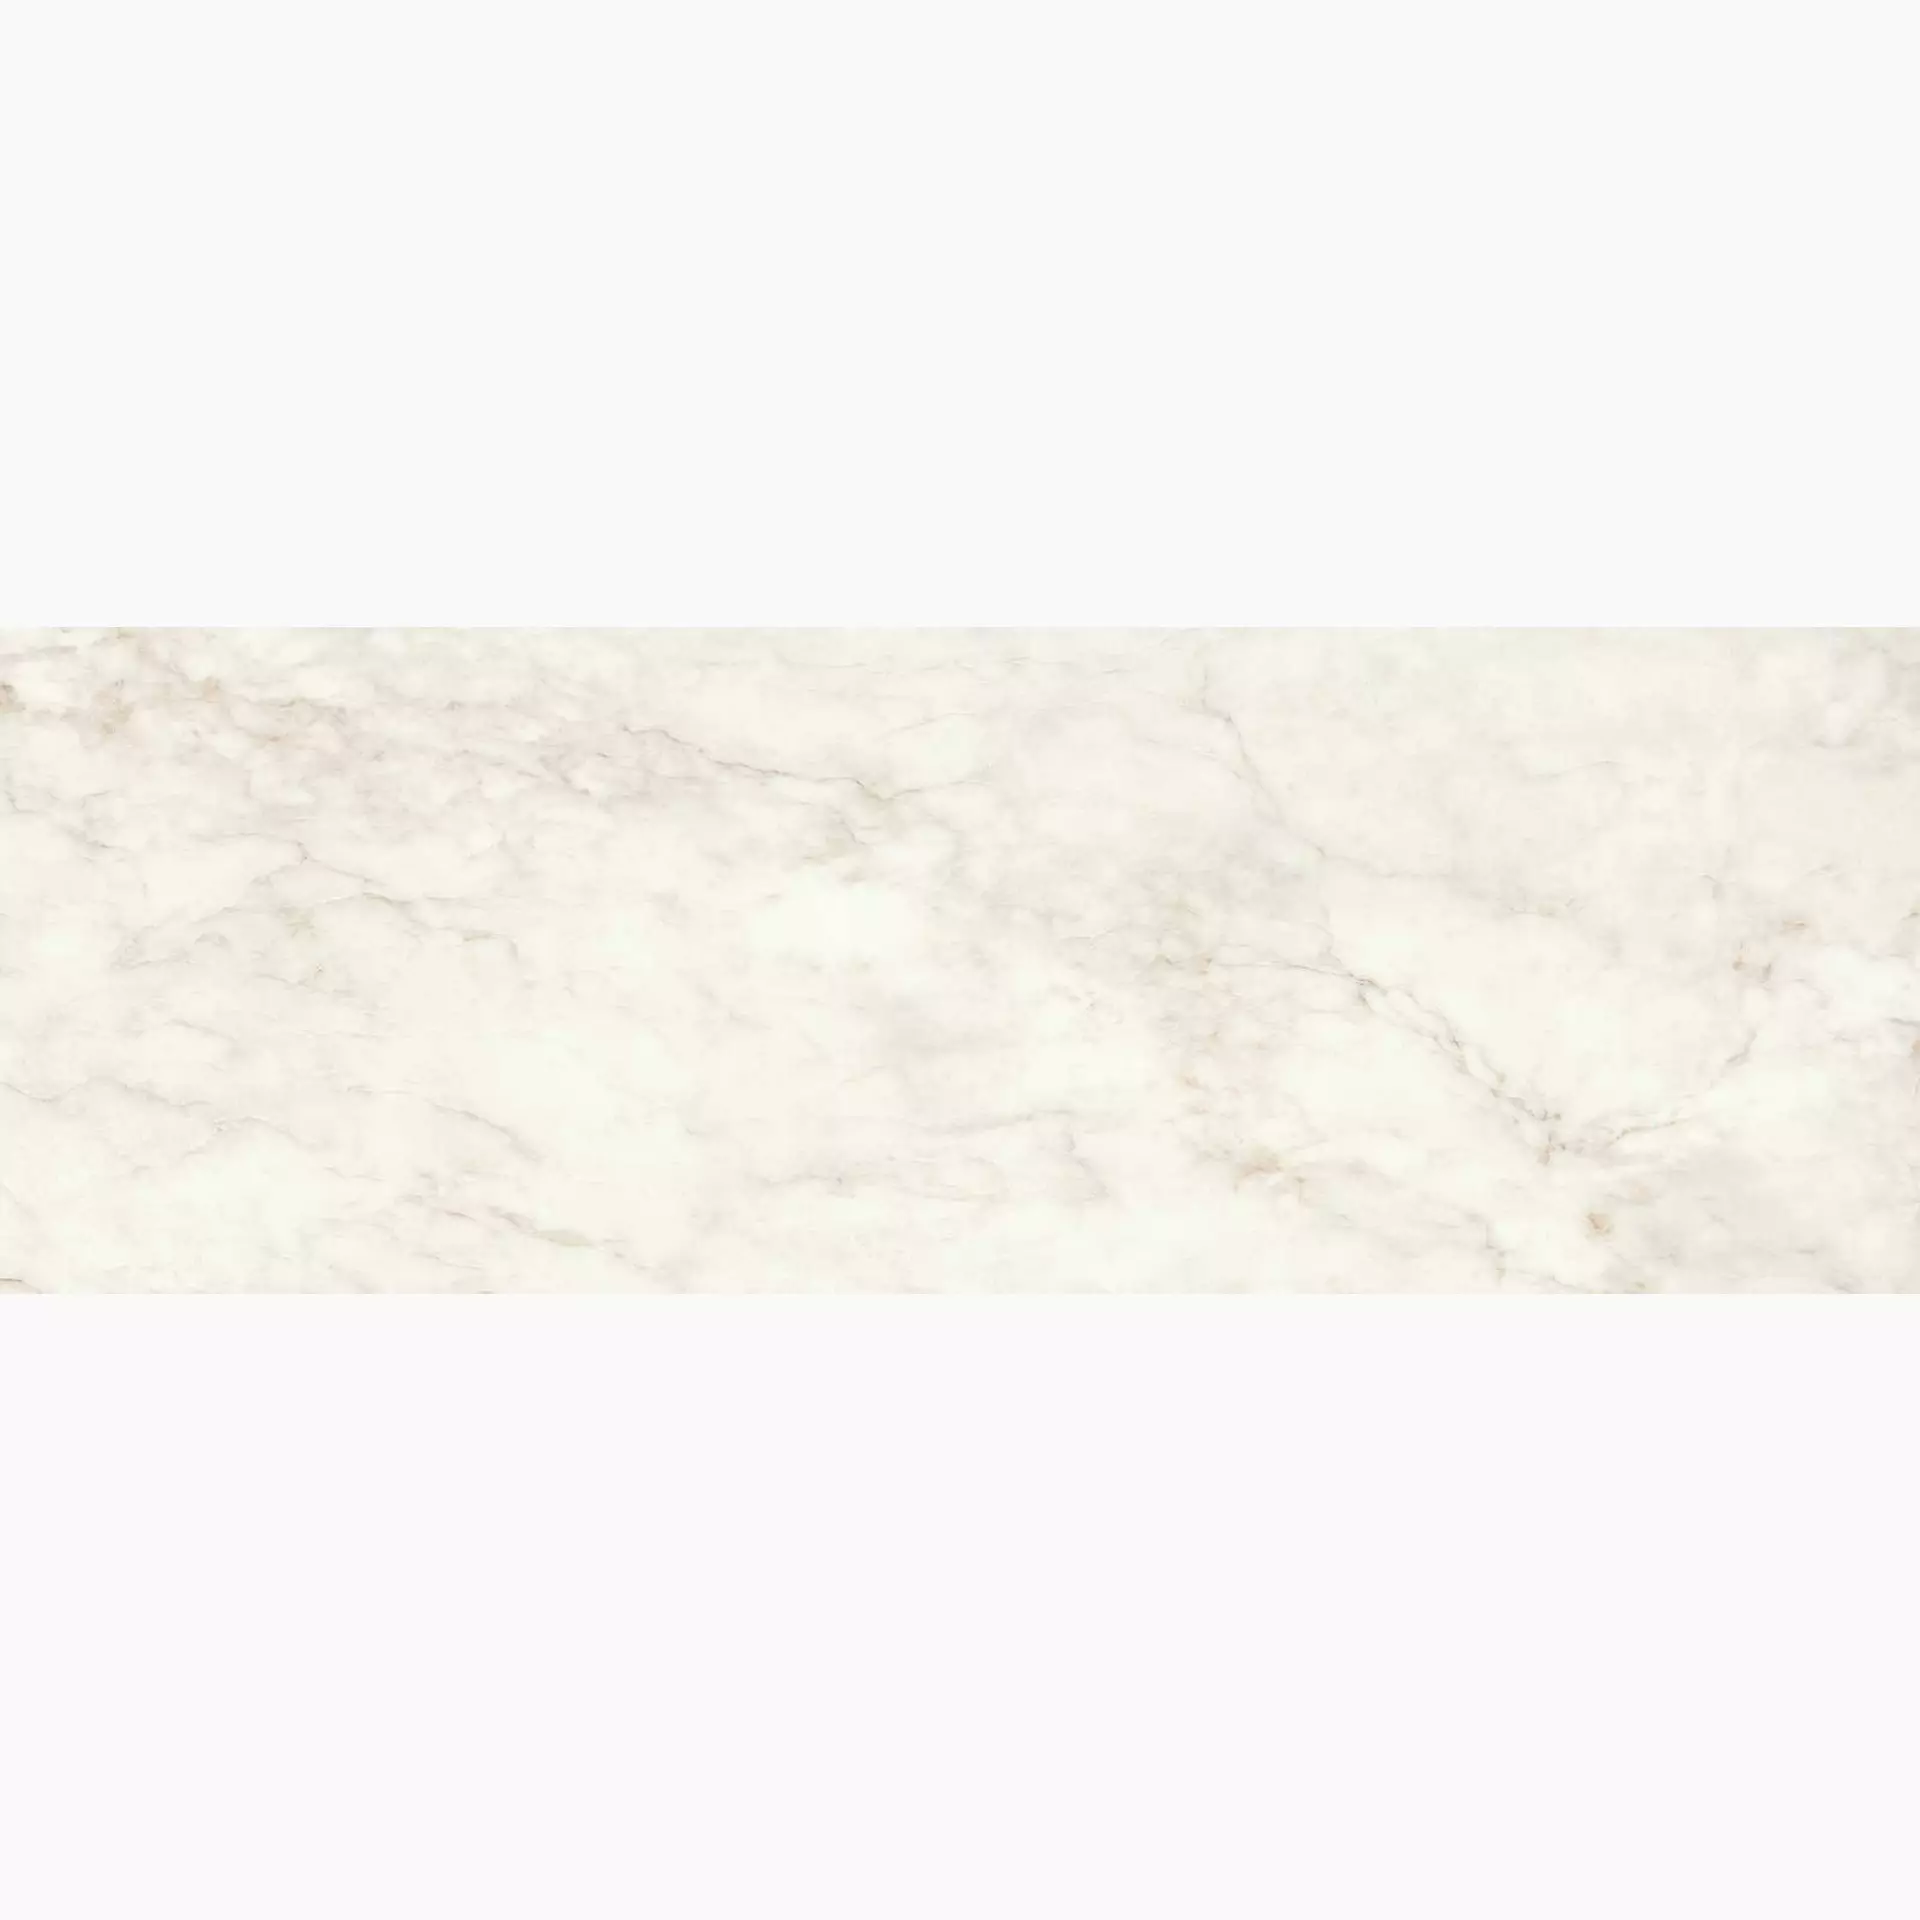 Marazzi Marbleplay Calacatta Naturale – Matt M4NW 30x90cm rectified 10mm